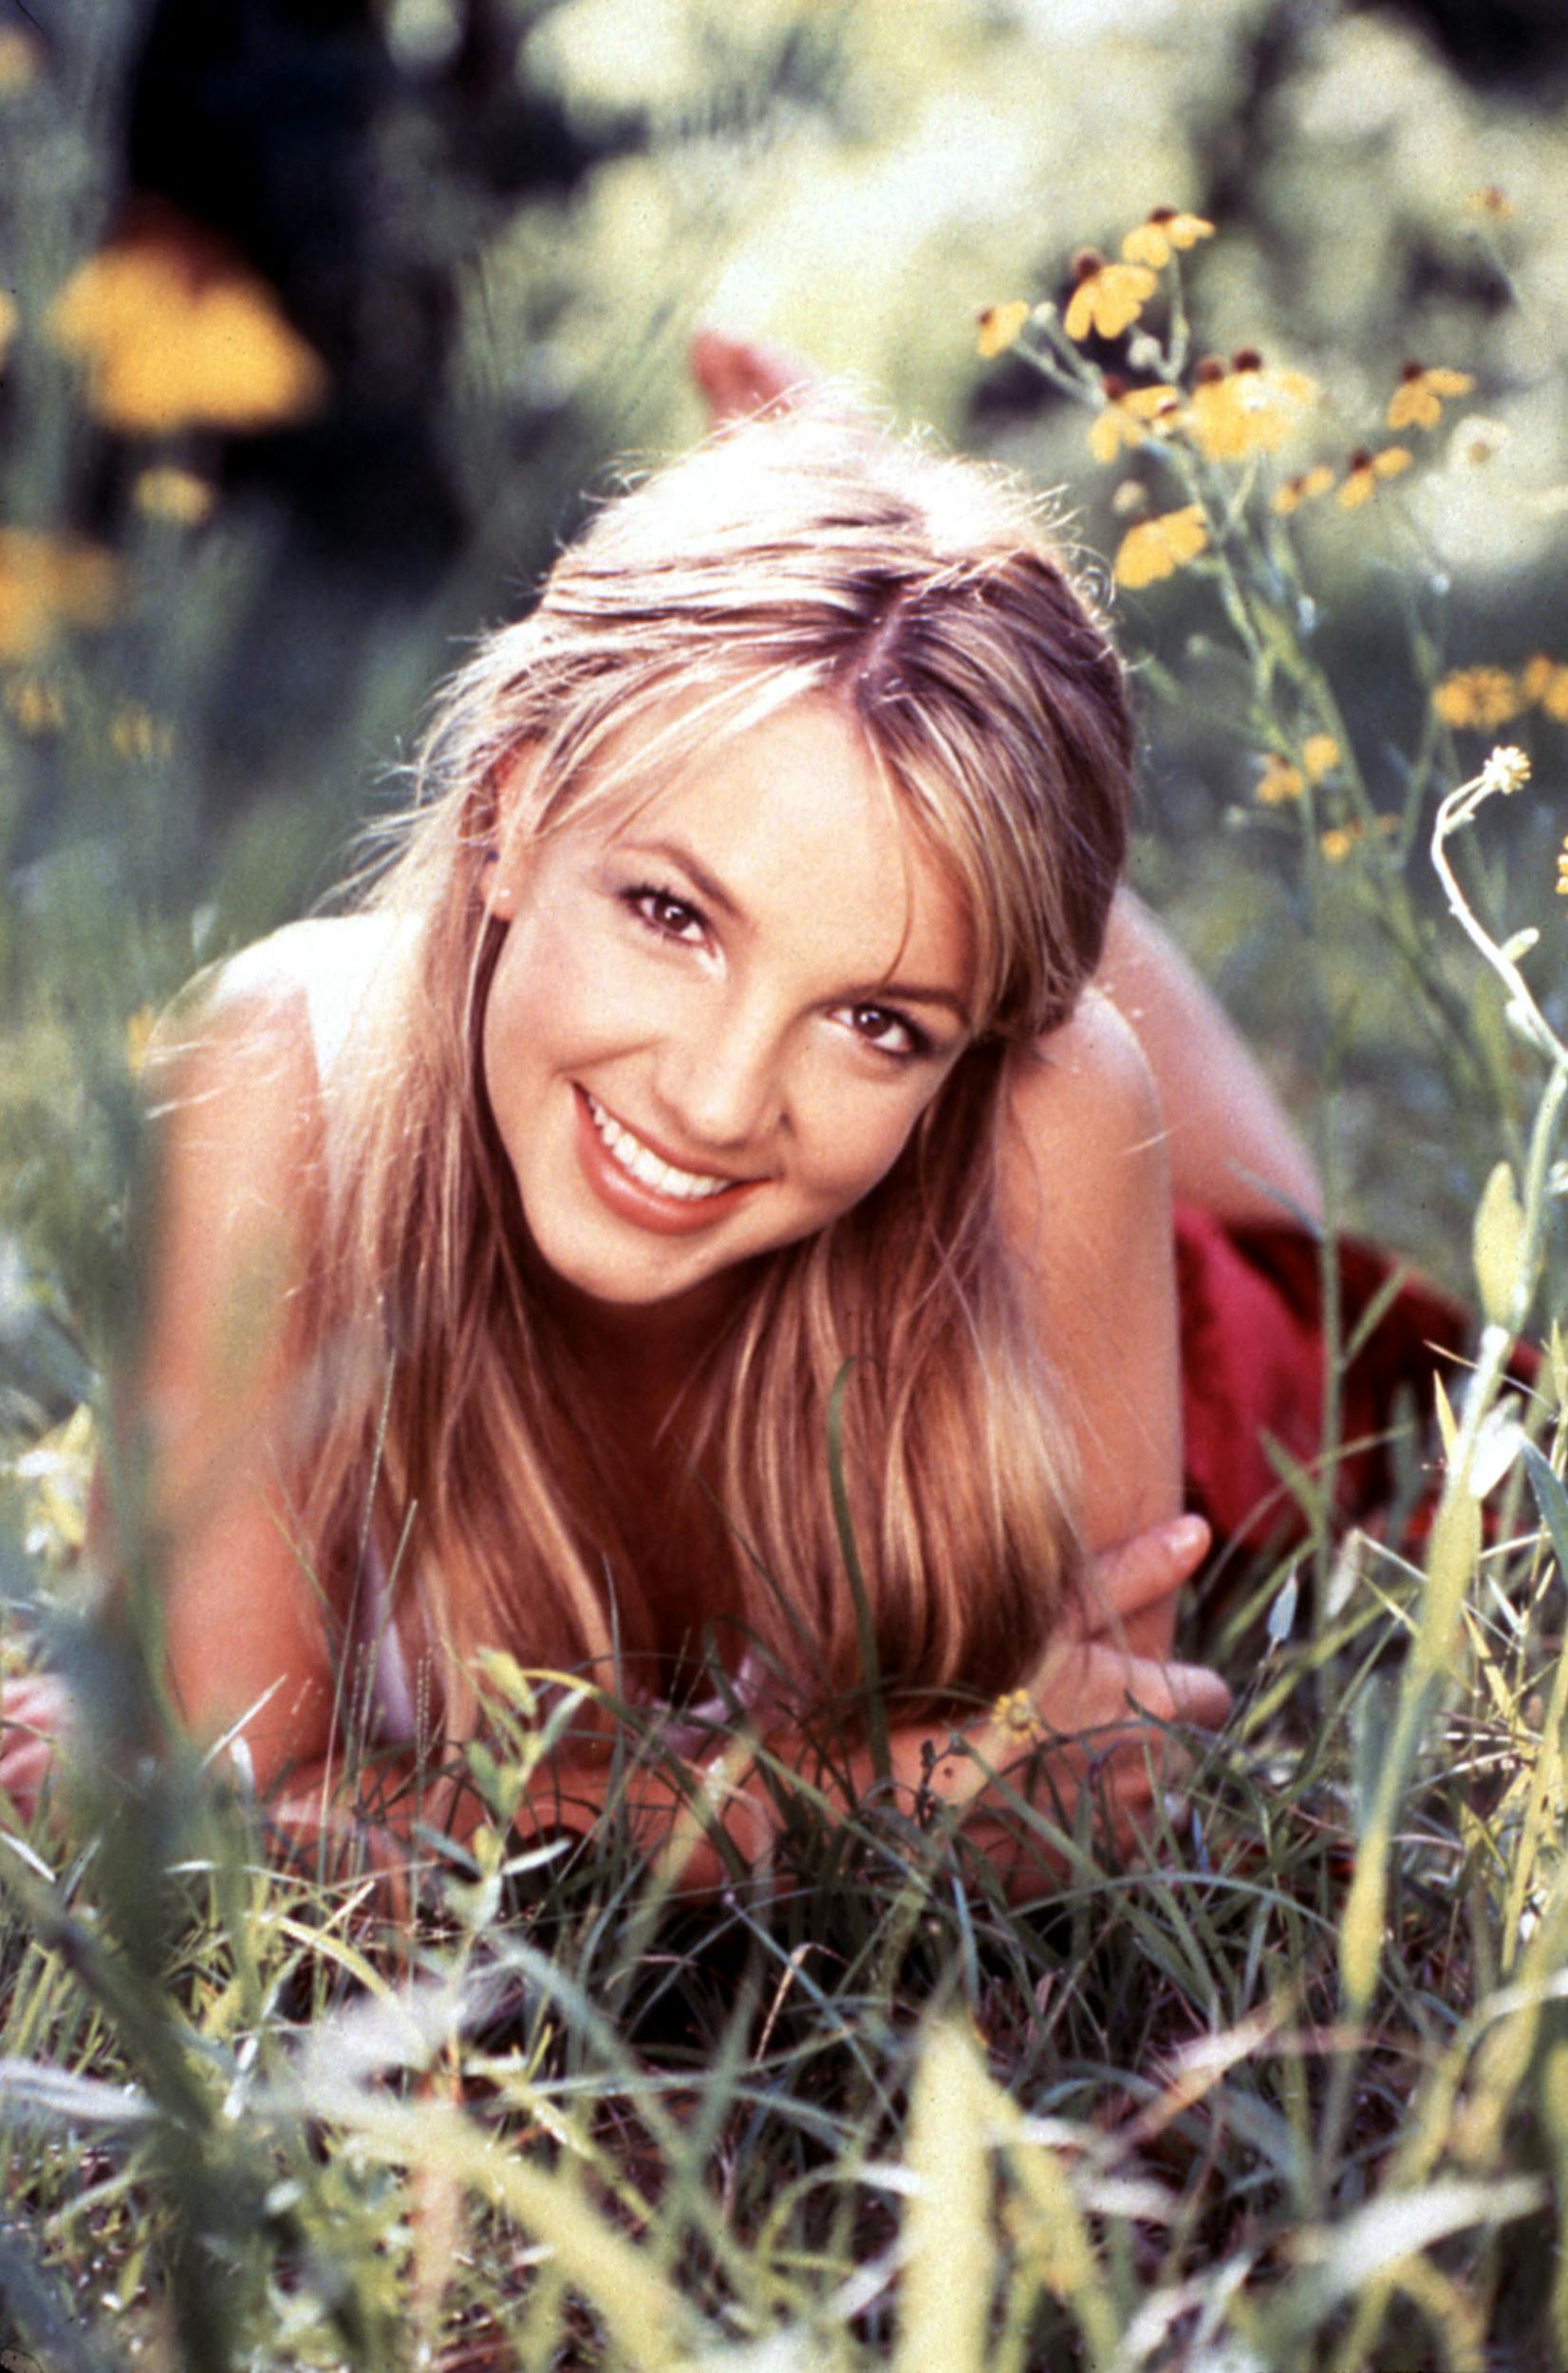 Britney Spears blev kendt som naboens datter, da hun brød igennem med nummeret "...Baby One More Time" i 1998.